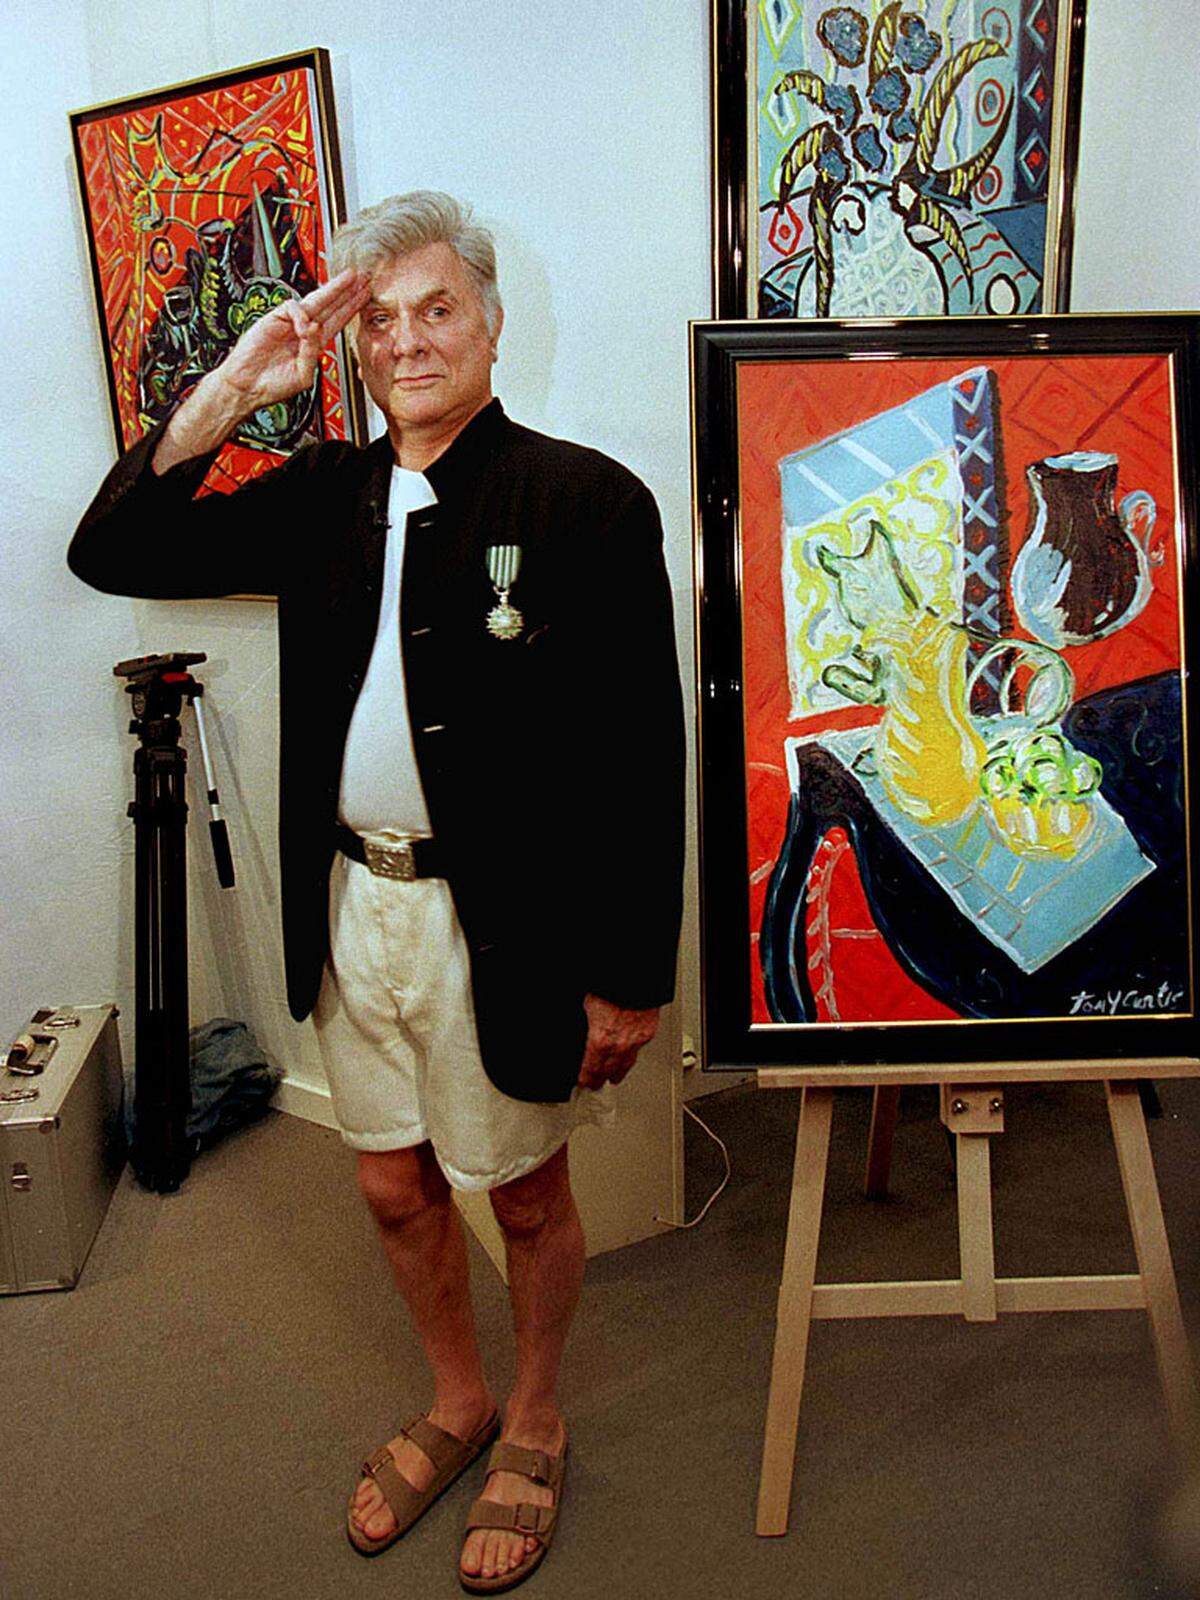 Im Alter fand Tony Curtis eine neue Leidenschaft: Die Kunst. Malen wurde zu einer zweiten Profession. Tagelang agierte er oft vor der Staffelei. Seine Kunst wurde in Galerien ausgestellt und für Tausende von Dollars verkauft.